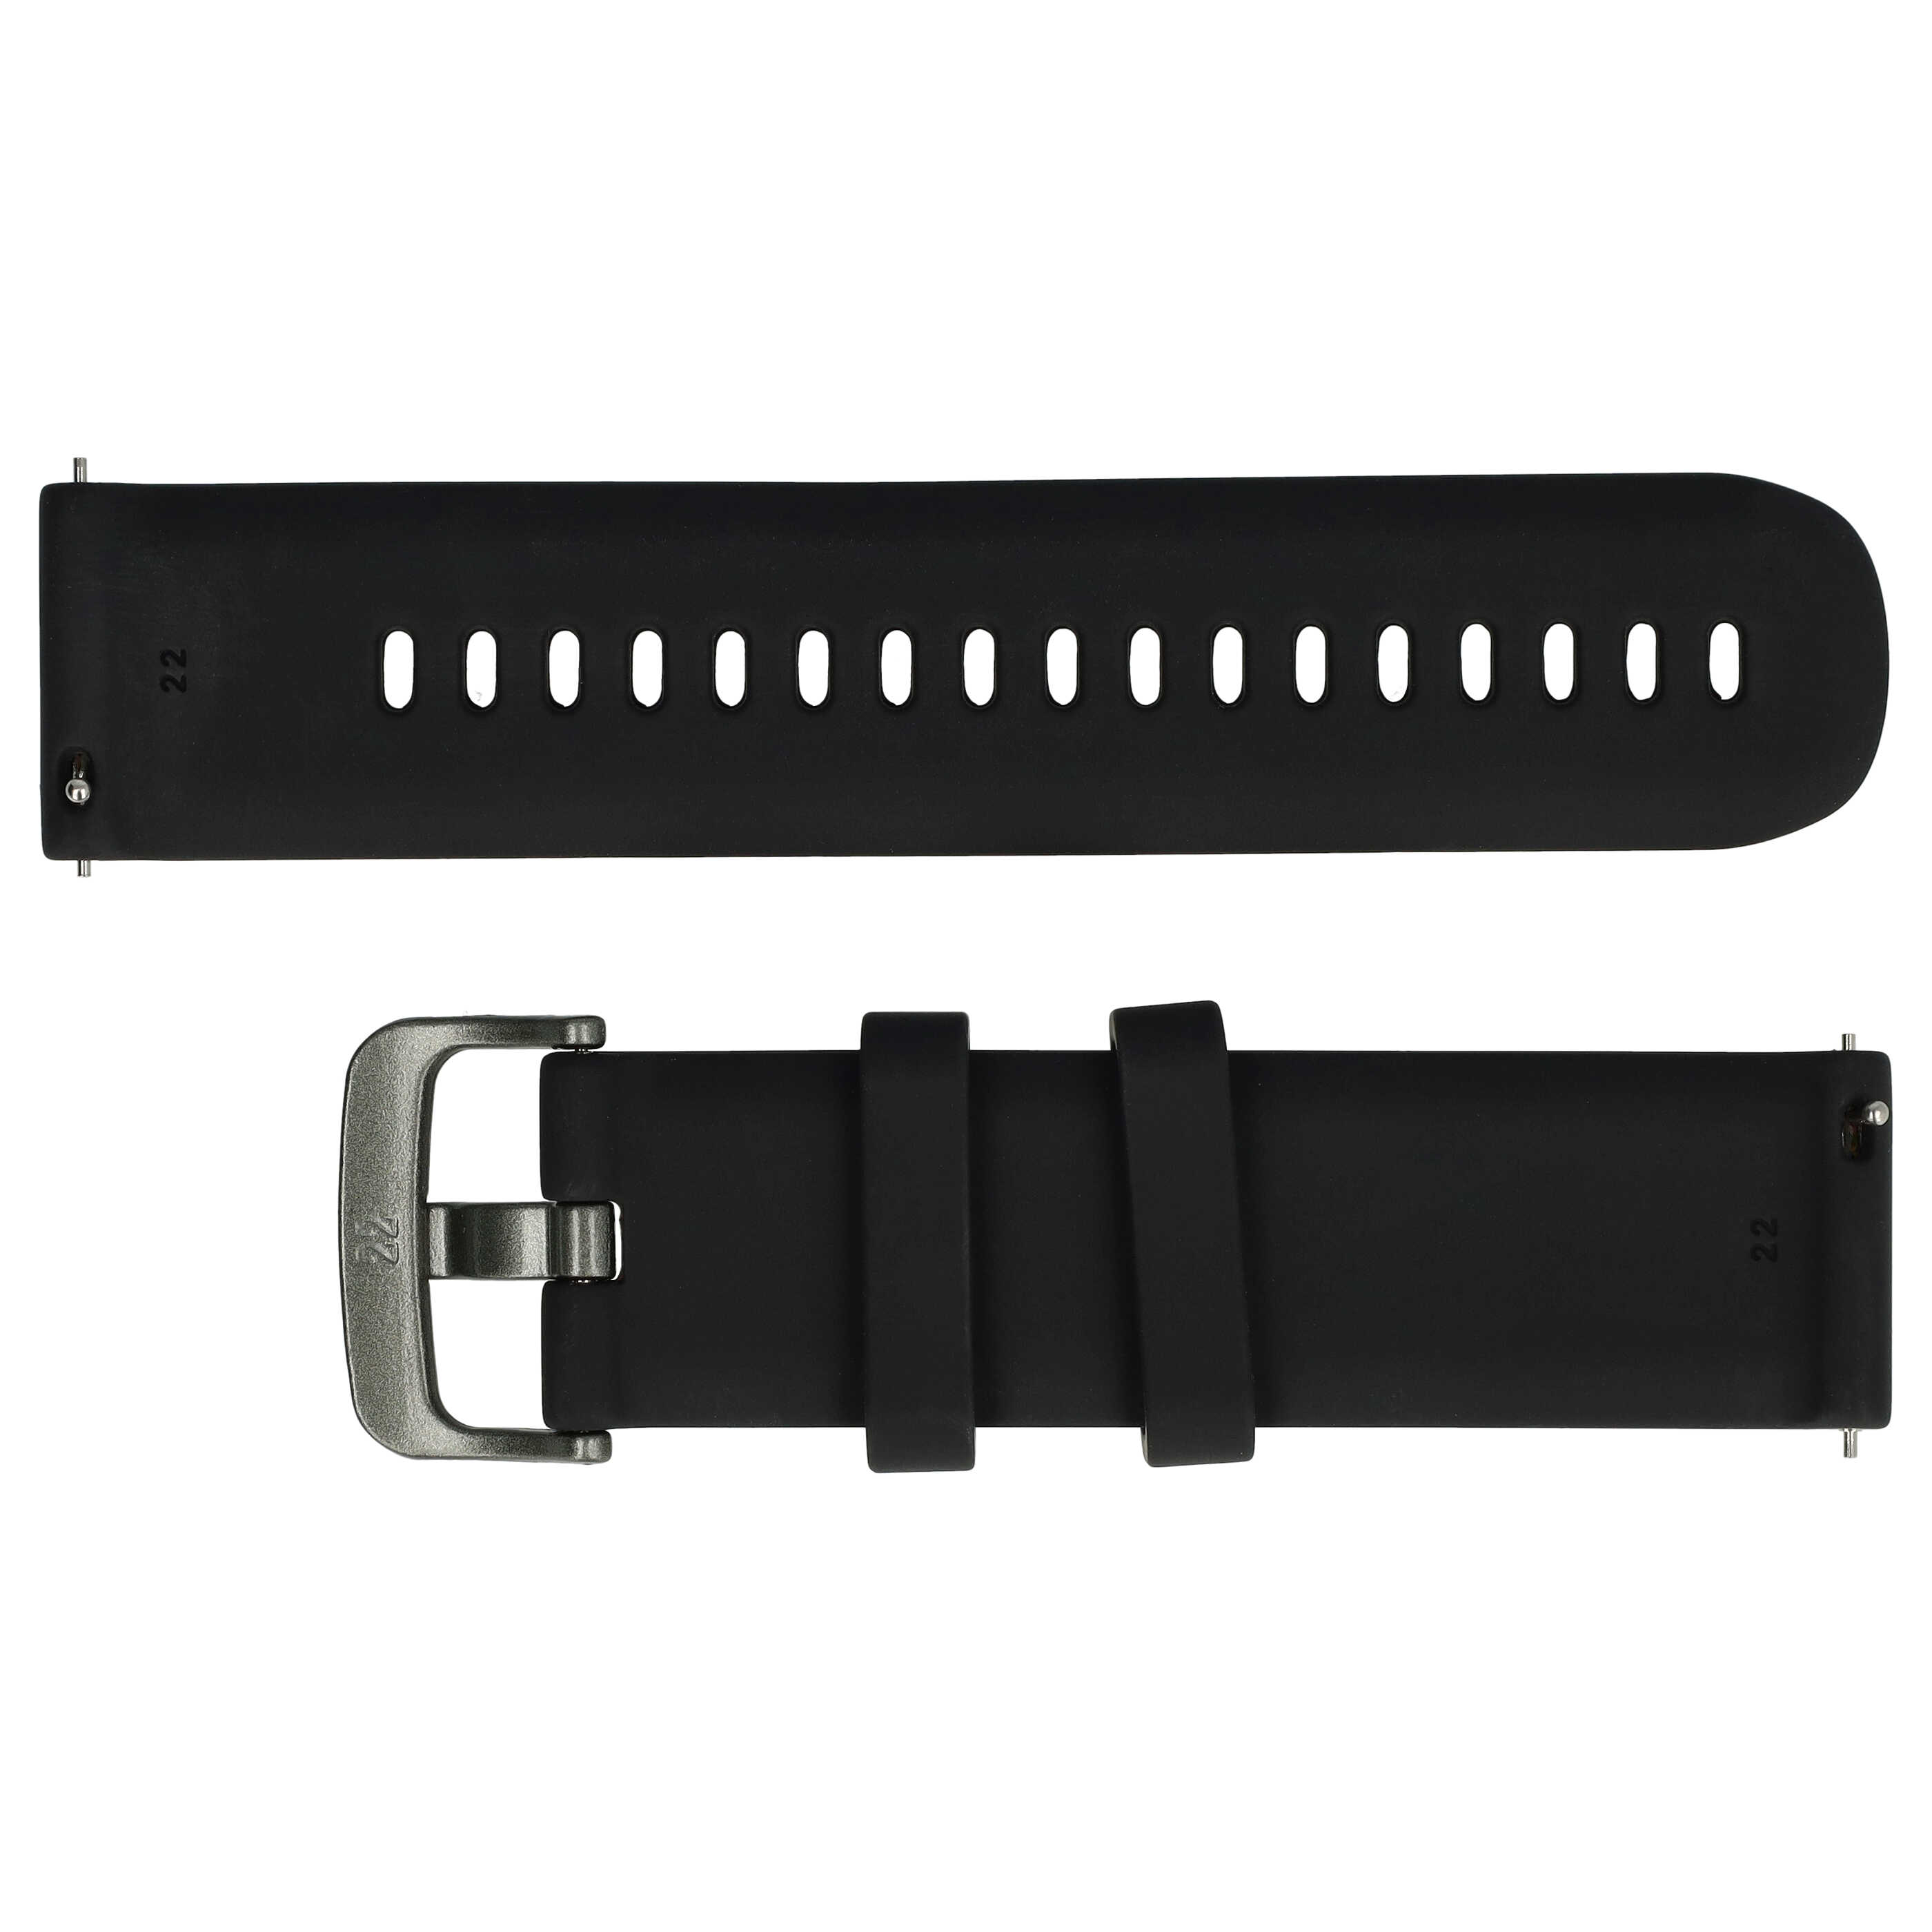 Pasek S do smartwatch Samsung Galaxy Watch - obwód nadgarstka do 232 mm , silikon, czarny